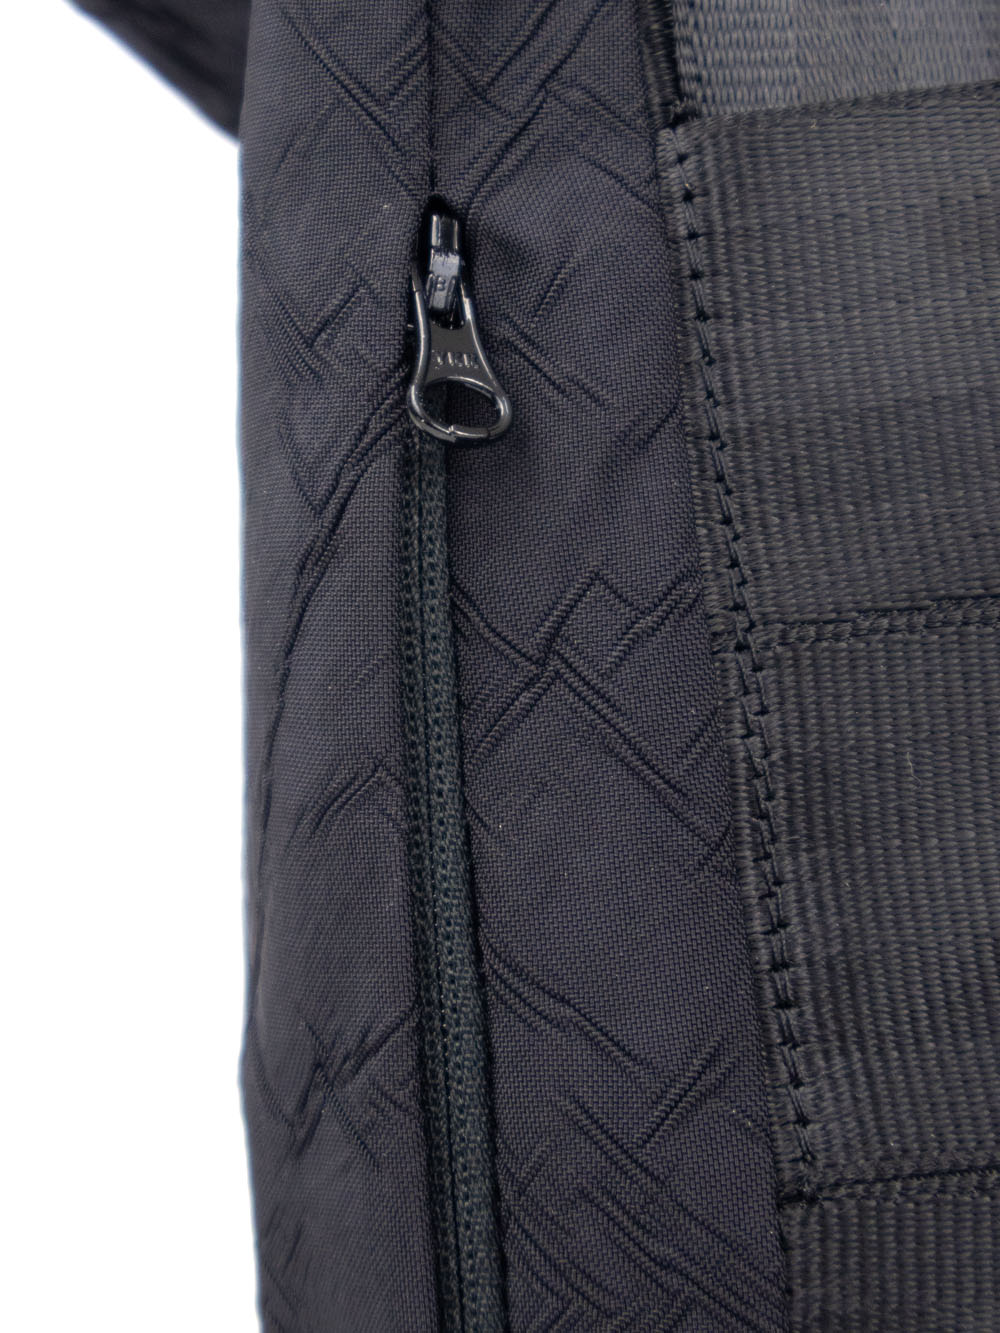 Airpaq sac à dos roll top - couleur noir 